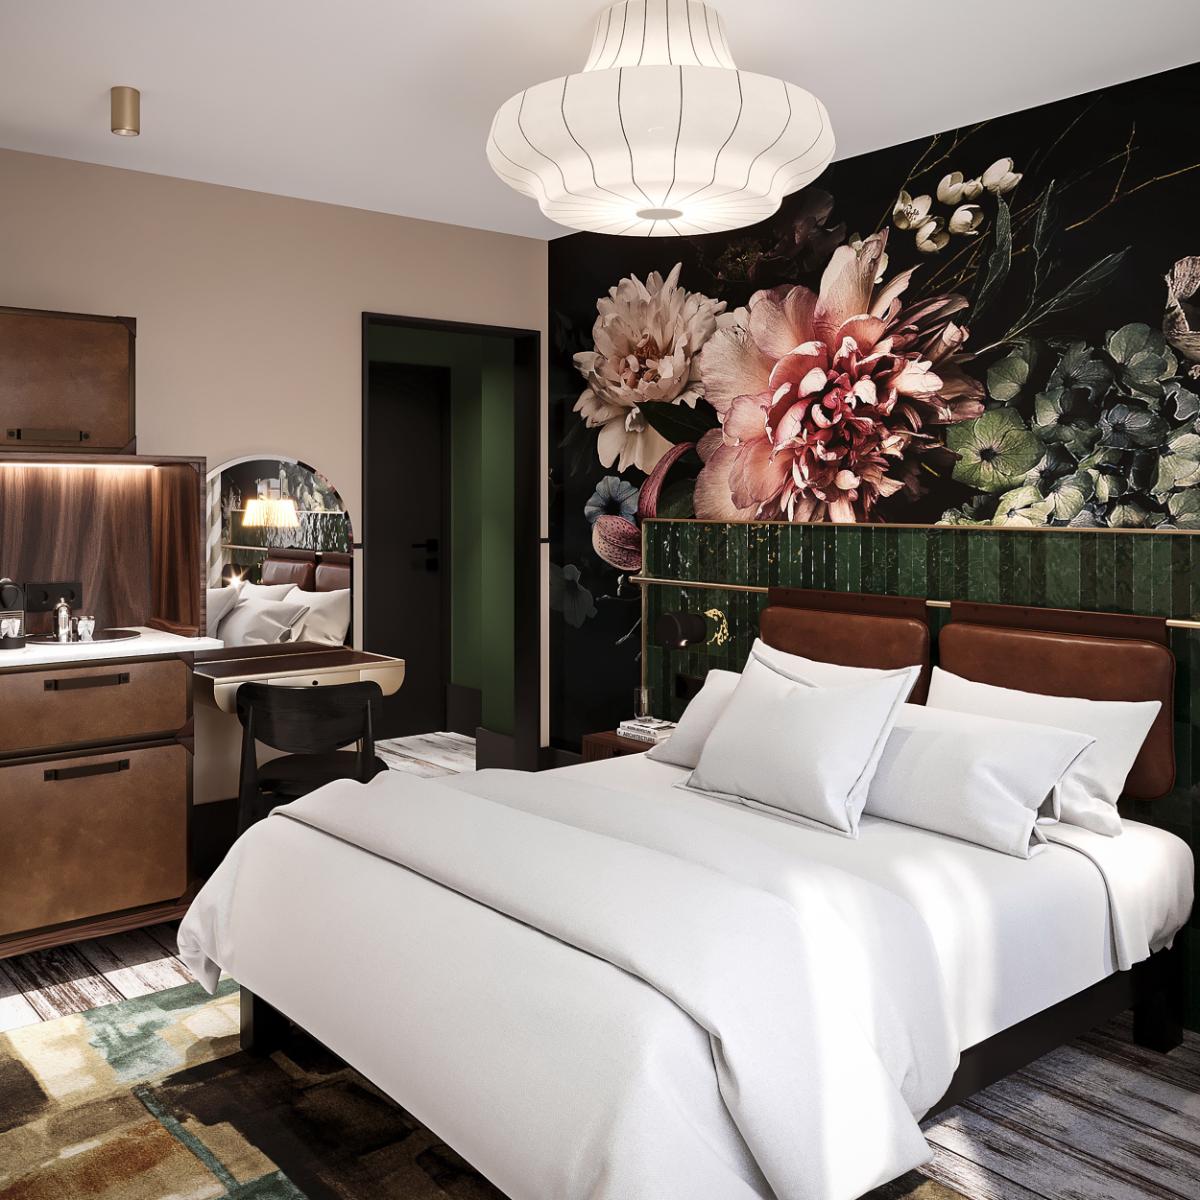 แอคคอร์เปิดตัว “Handwritten Collection” แบรนด์โรงแรมระดับโลกแบรนด์ใหม่ เปิดตัวพร้อมกับโรงแรม 12 แห่งทั่วโลก